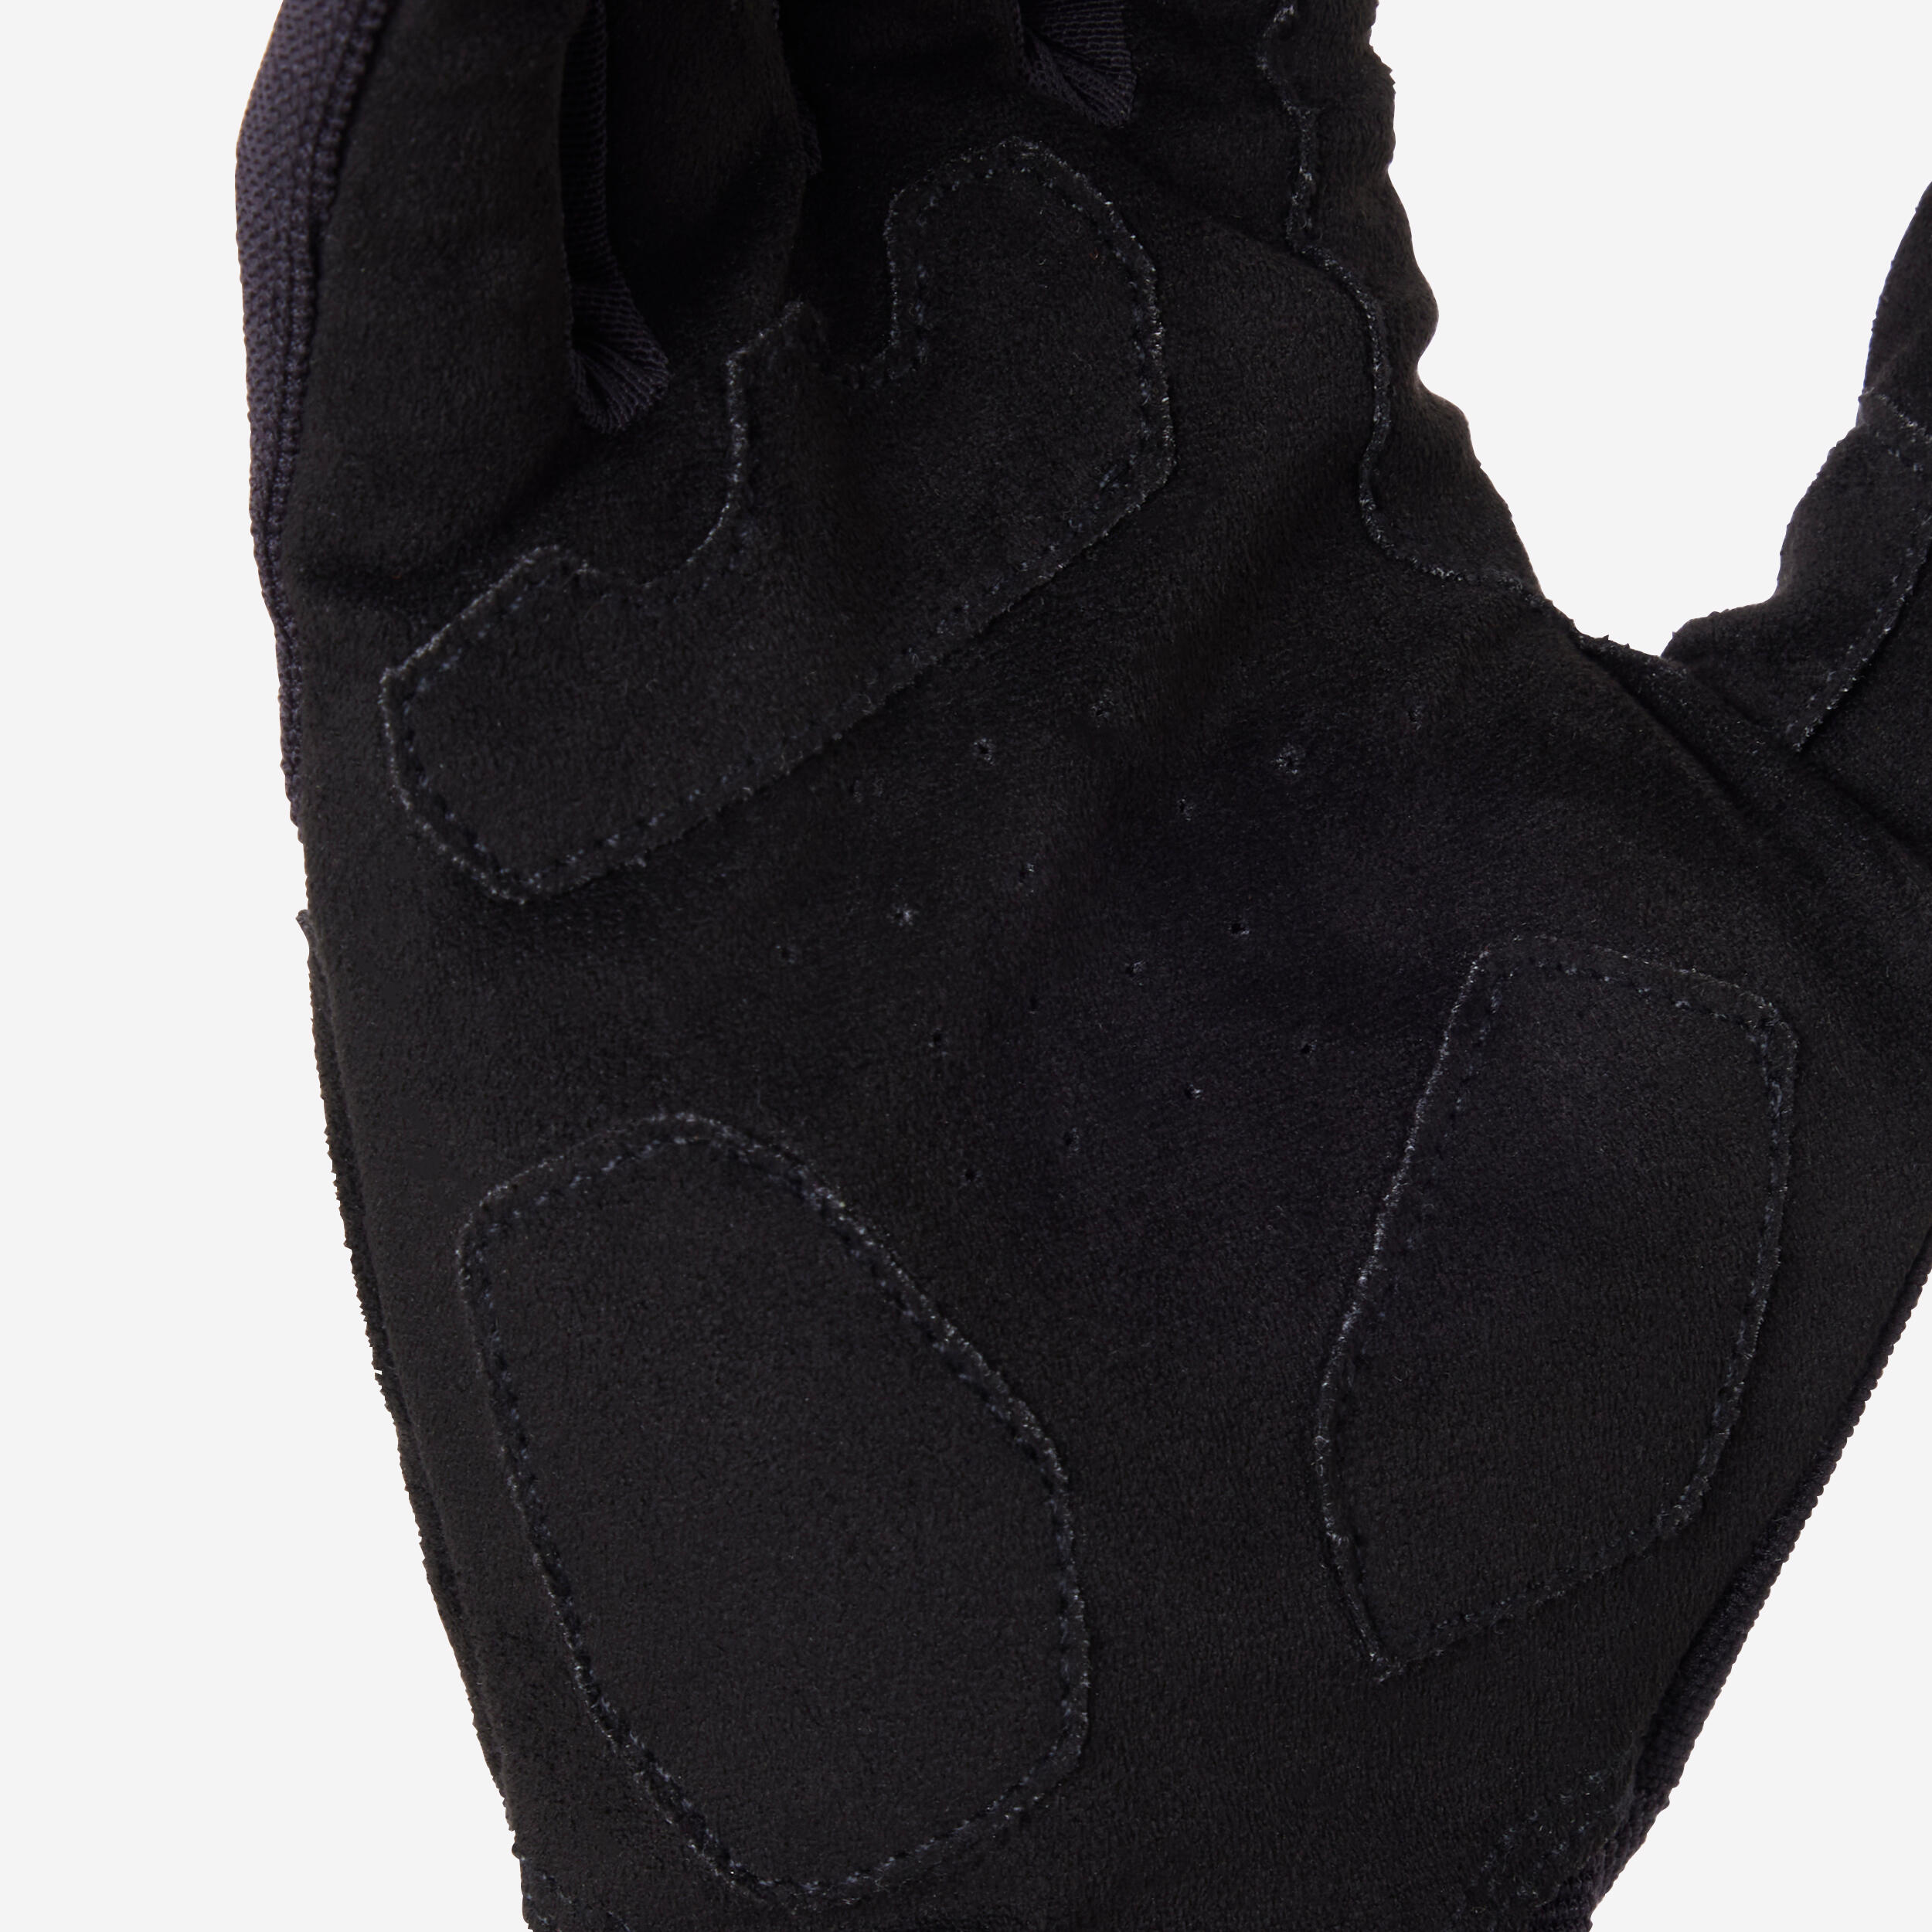 ST 100 Mountain Bike Gloves - Black 9/9